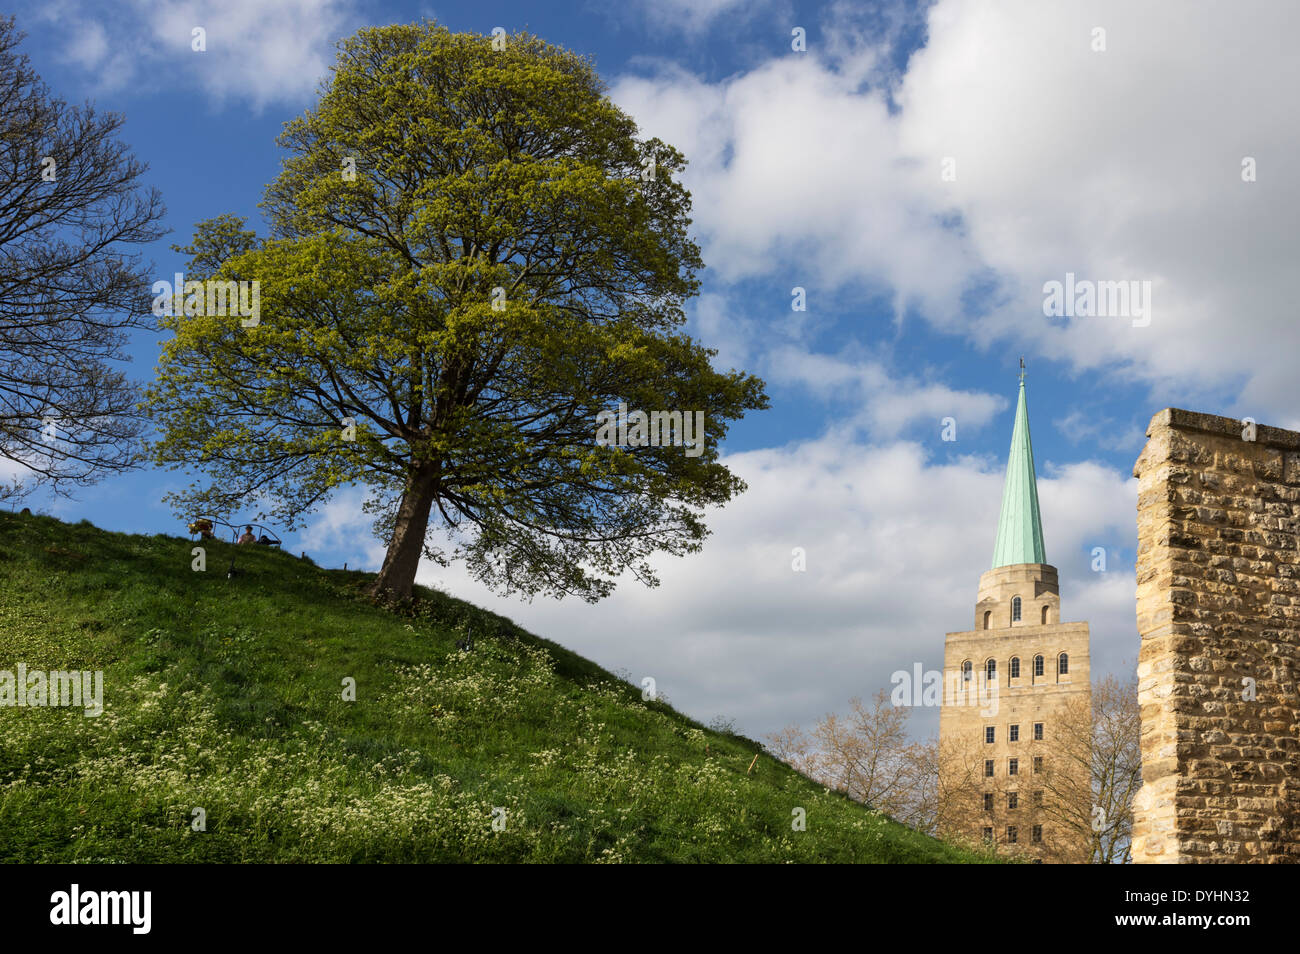 El montículo del castillo en el centro de la ciudad de Oxford, con la torre de Nuffield College en el fondo Foto de stock